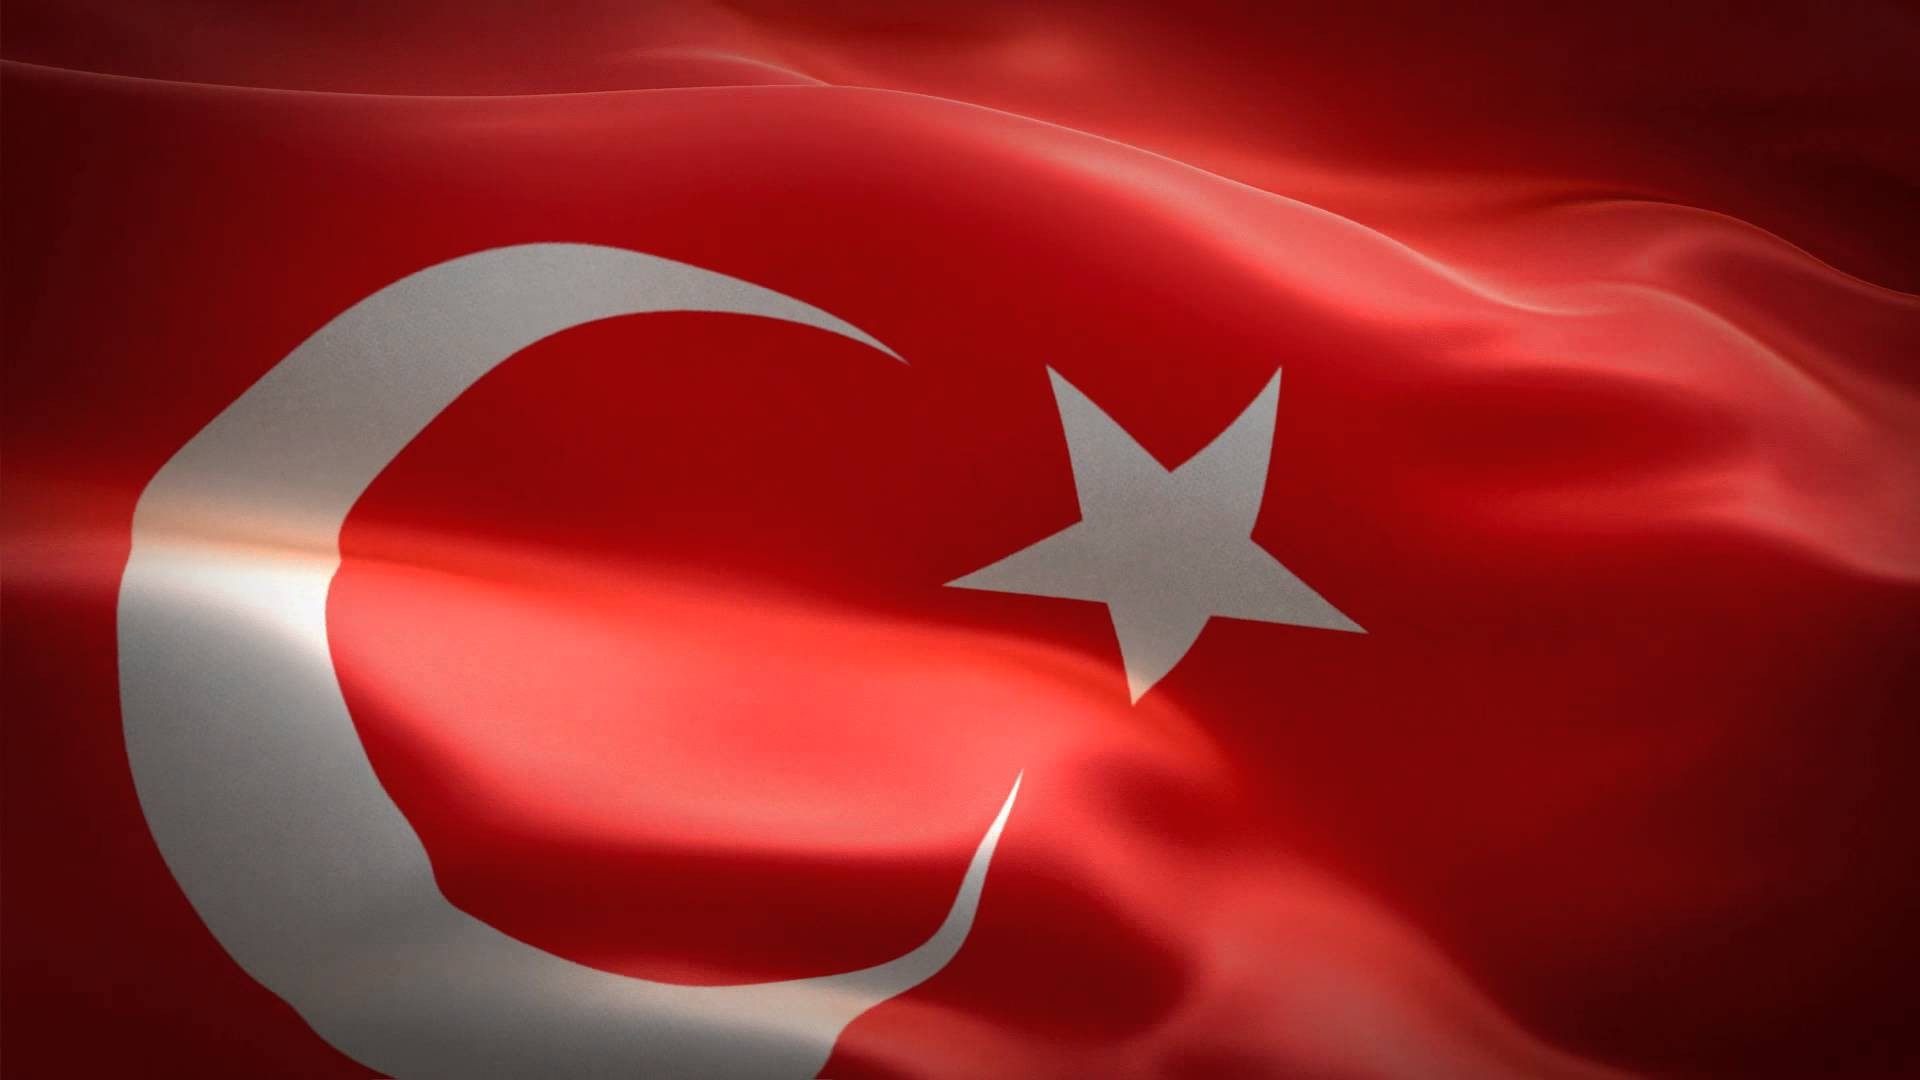 en guzel turk bayragi resimleri 4